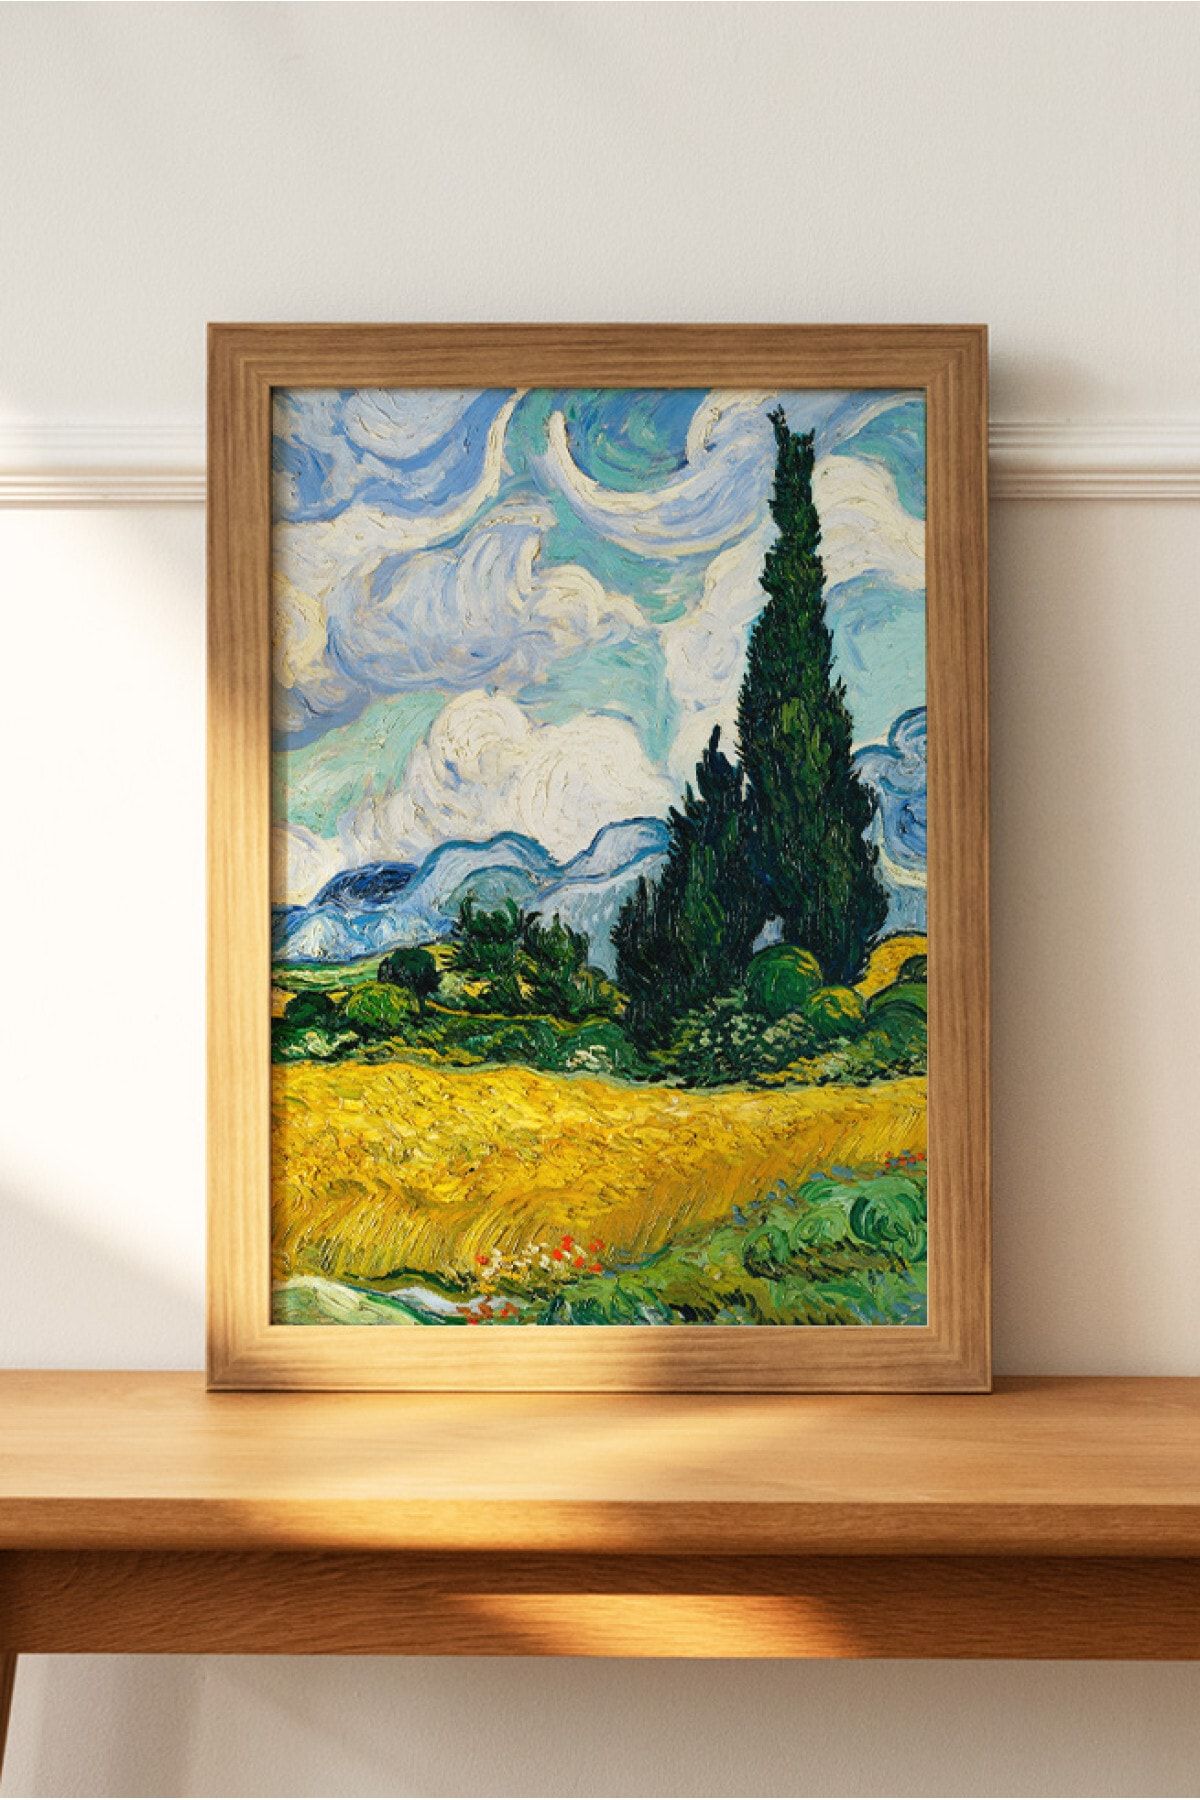 DuoArt Vincent Van Gogh Tablo Sanatsal Ünlü Ressam Poster - Yüksek Çözünürlük Çerçevesiz Hd Poster